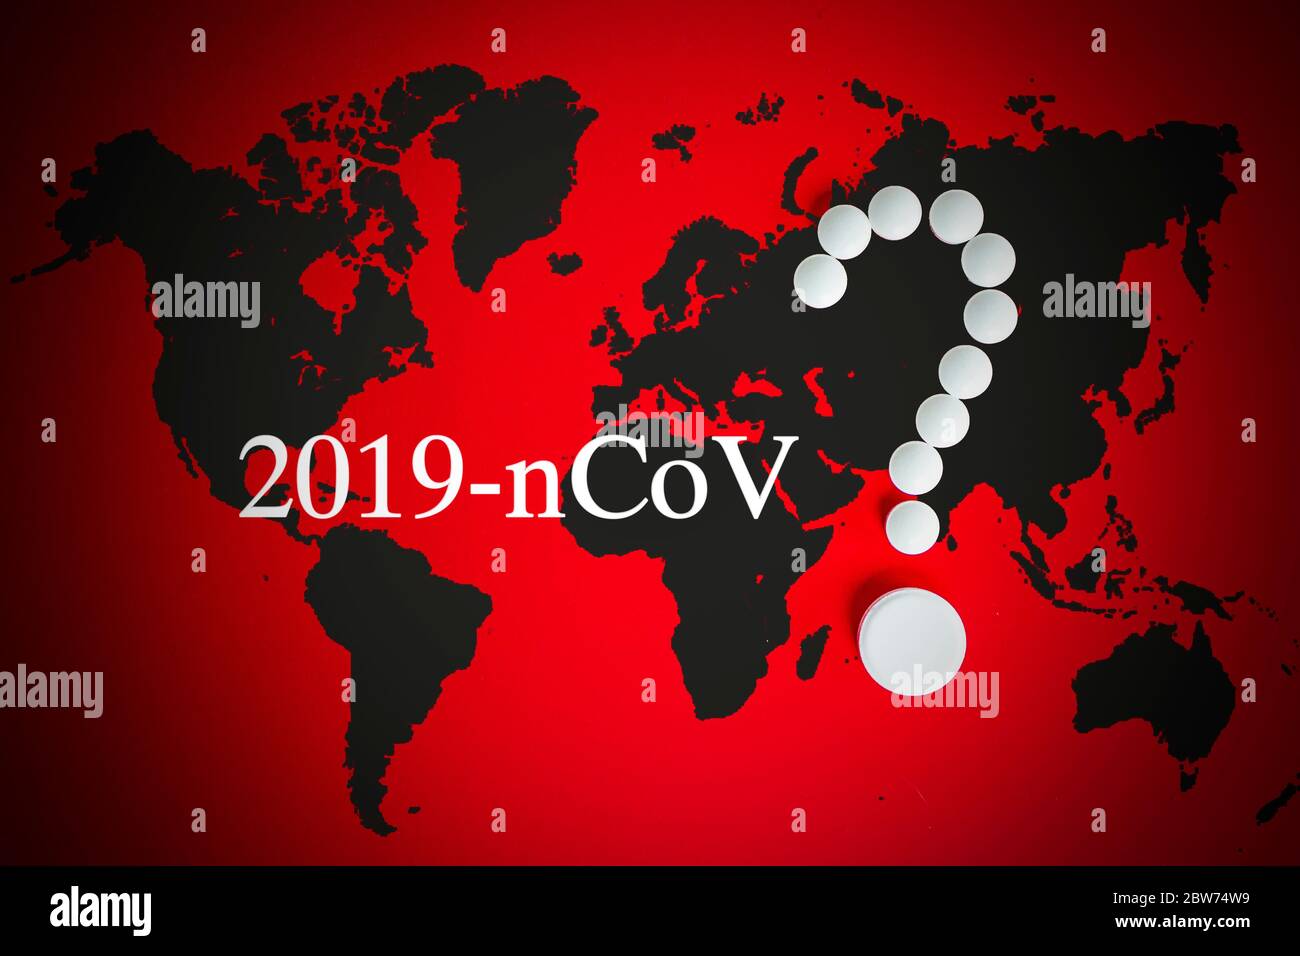 Coronavirus 2019-nCov novel coronavirus concept resposible for asian flu outbreak and coronaviruses influenza as dangerous flu strain cases pandemic. Stock Photo